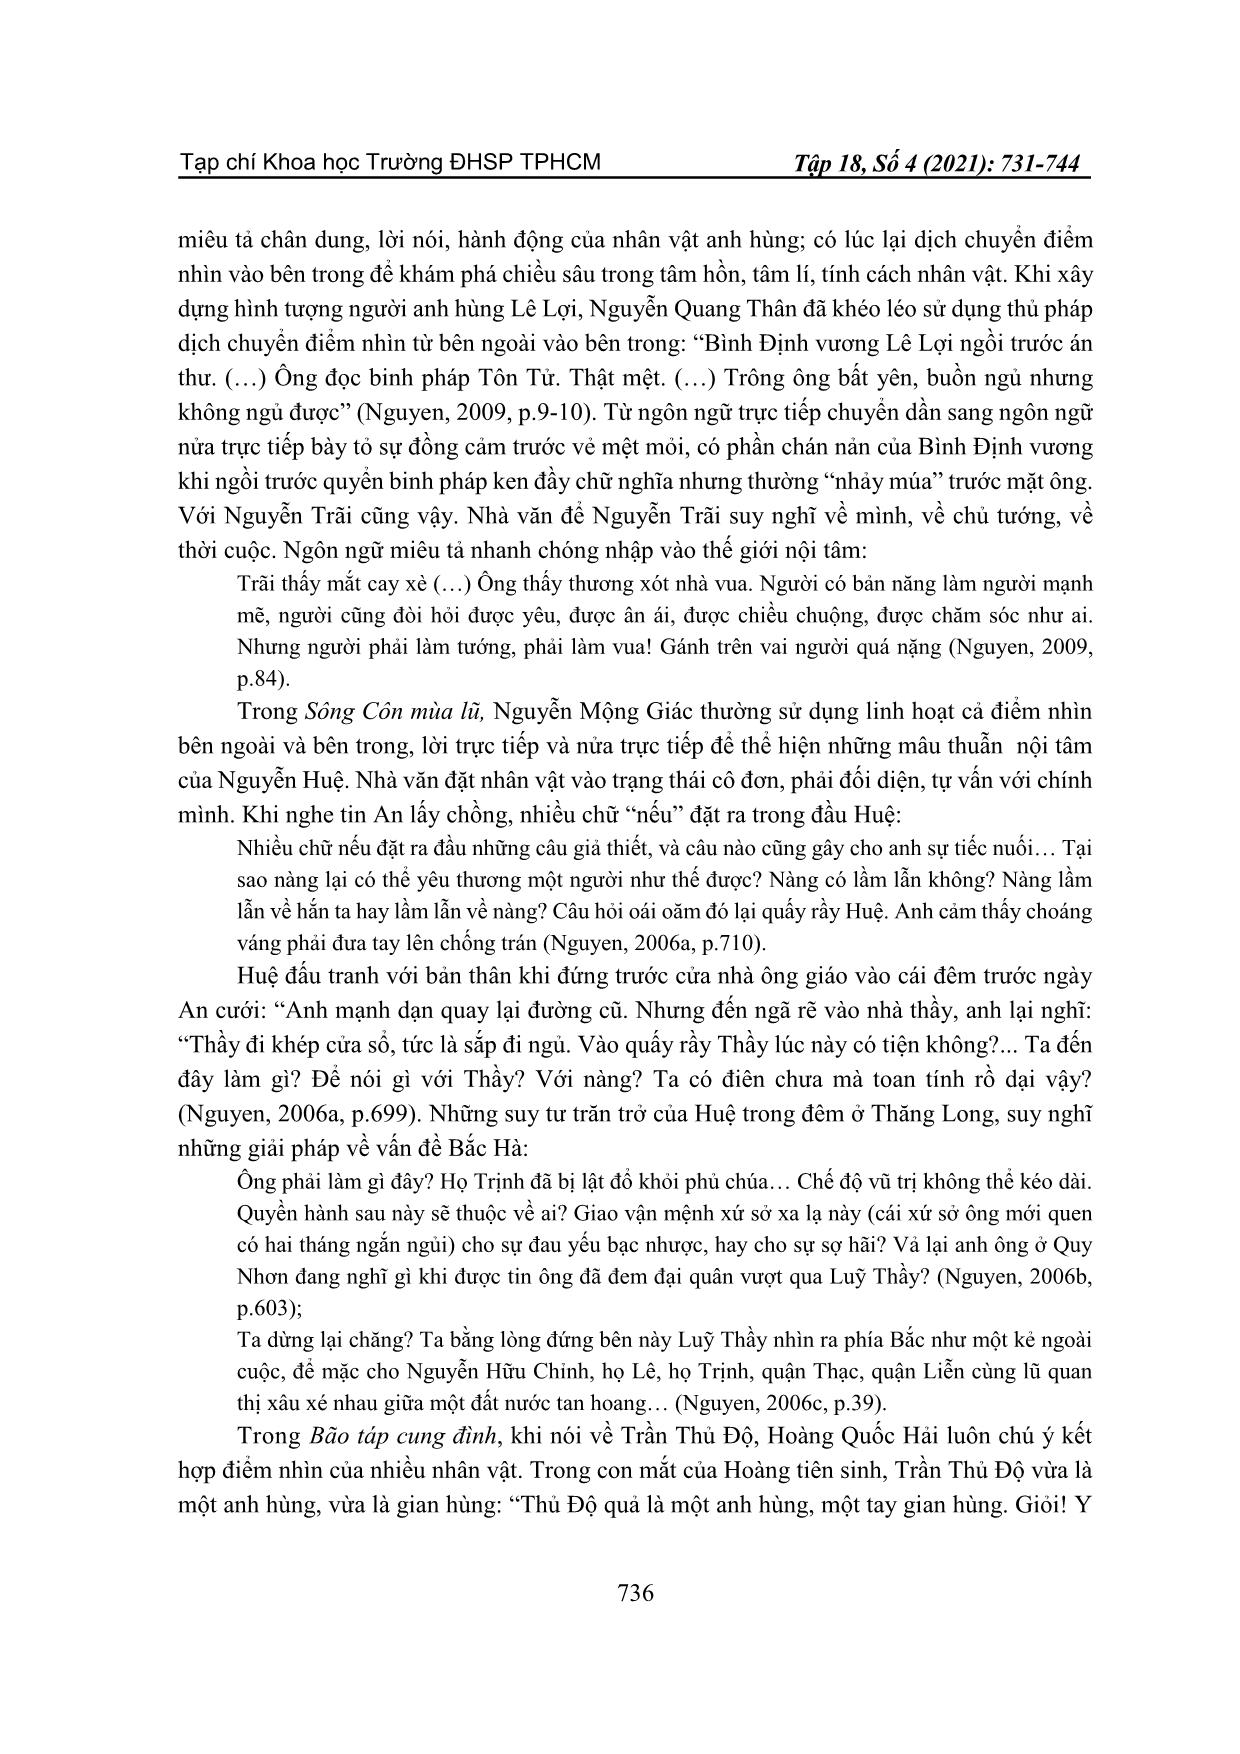 Điểm nhìn và giọng điệu trần thuật khi miêu tả nhân vật anh hùng trong tiểu thuyết lịch sử Việt Nam sau 1975 trang 6